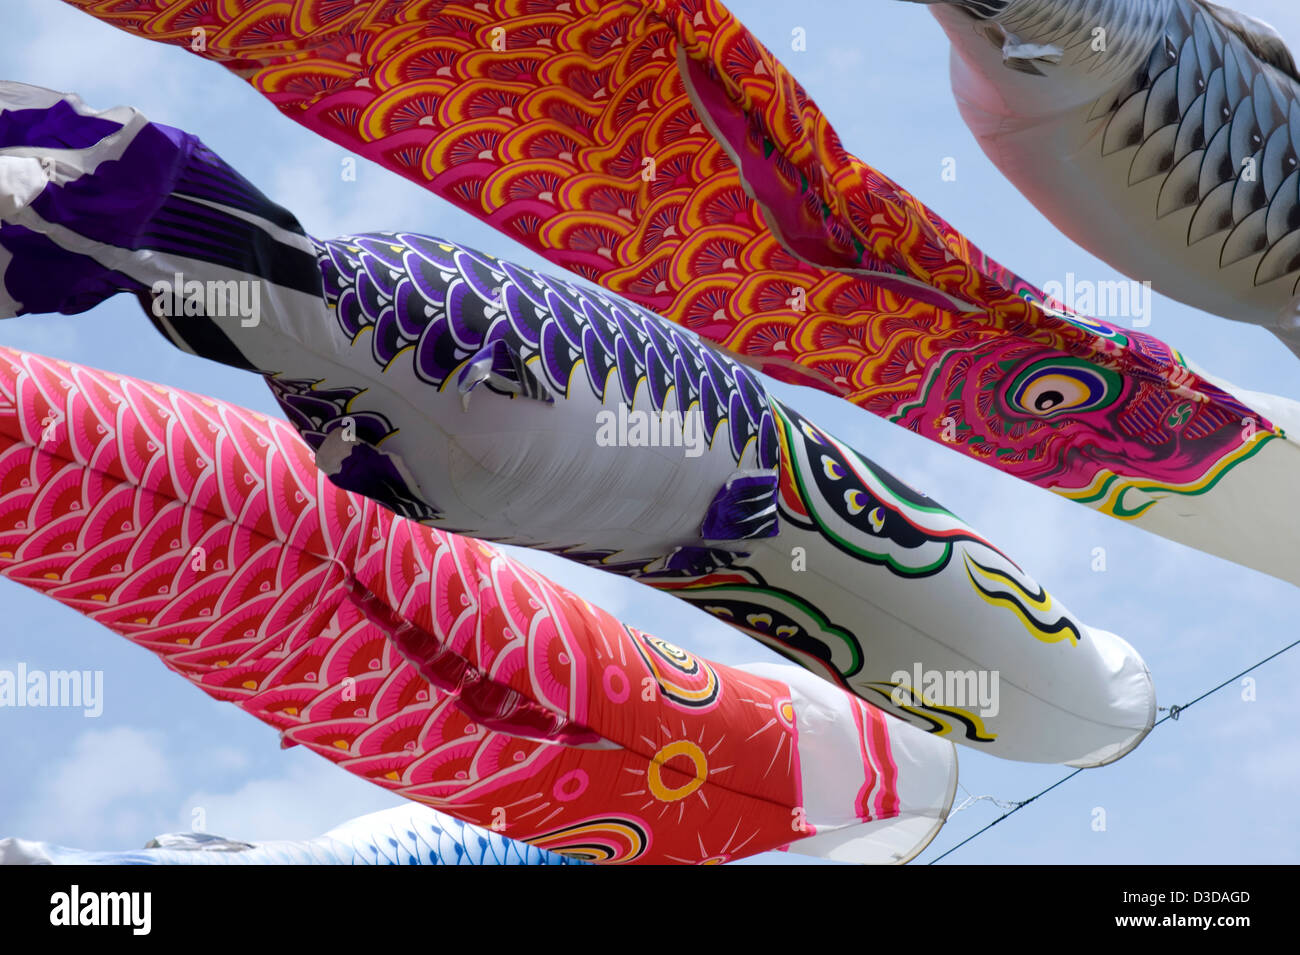 Bunte Koinobori Karpfen Luftschlangen wiegen sich im Wind am 5. Mai, Jungentag, ein Nationalfeiertag in Japan. Stockfoto